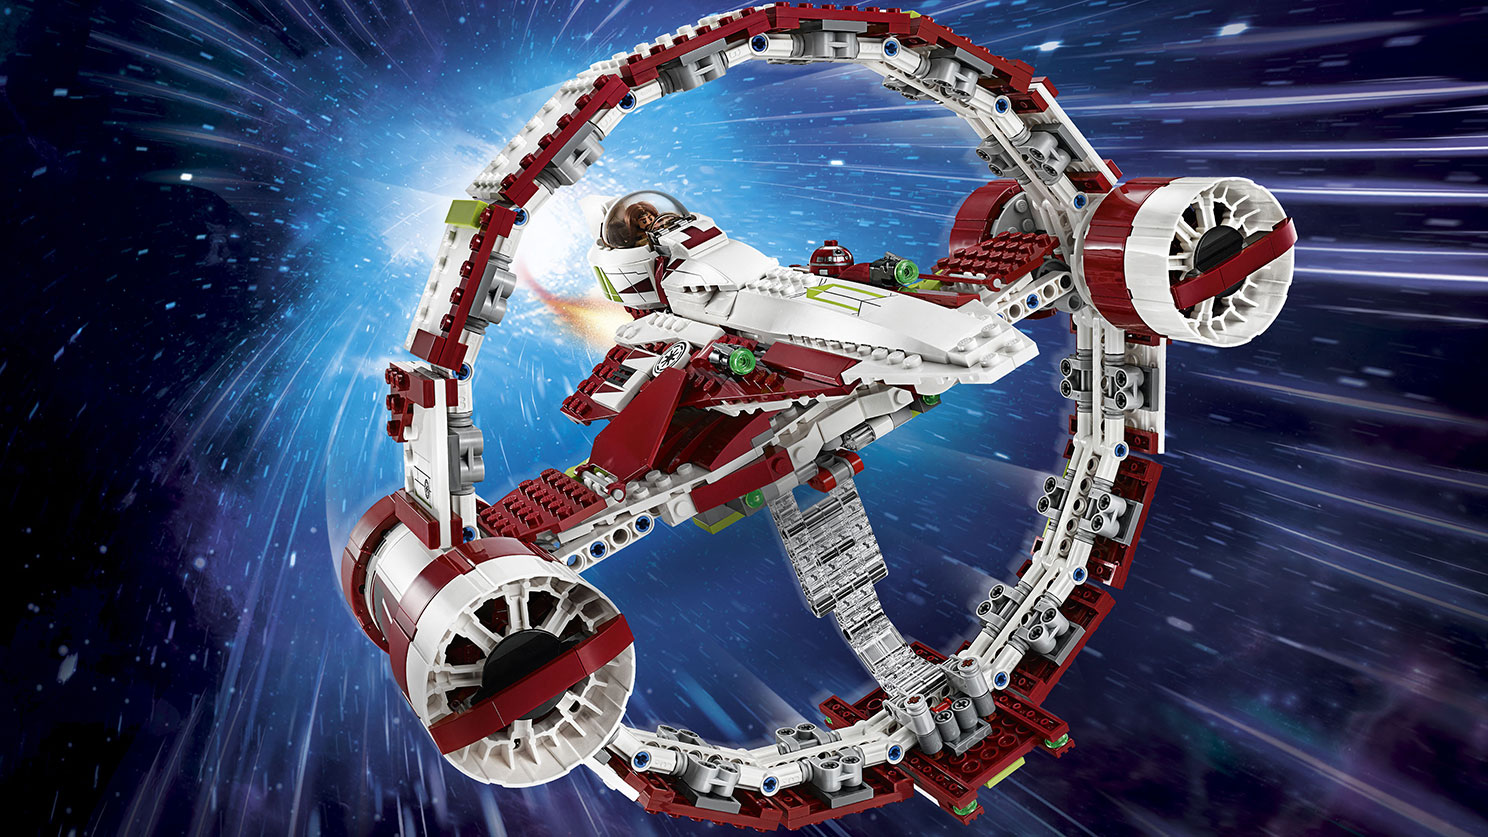 brænde Forsvinde apt Jedi Starfighter™ With Hyperdrive 75191 - LEGO® Star Wars™ Sets - LEGO.com  for kids